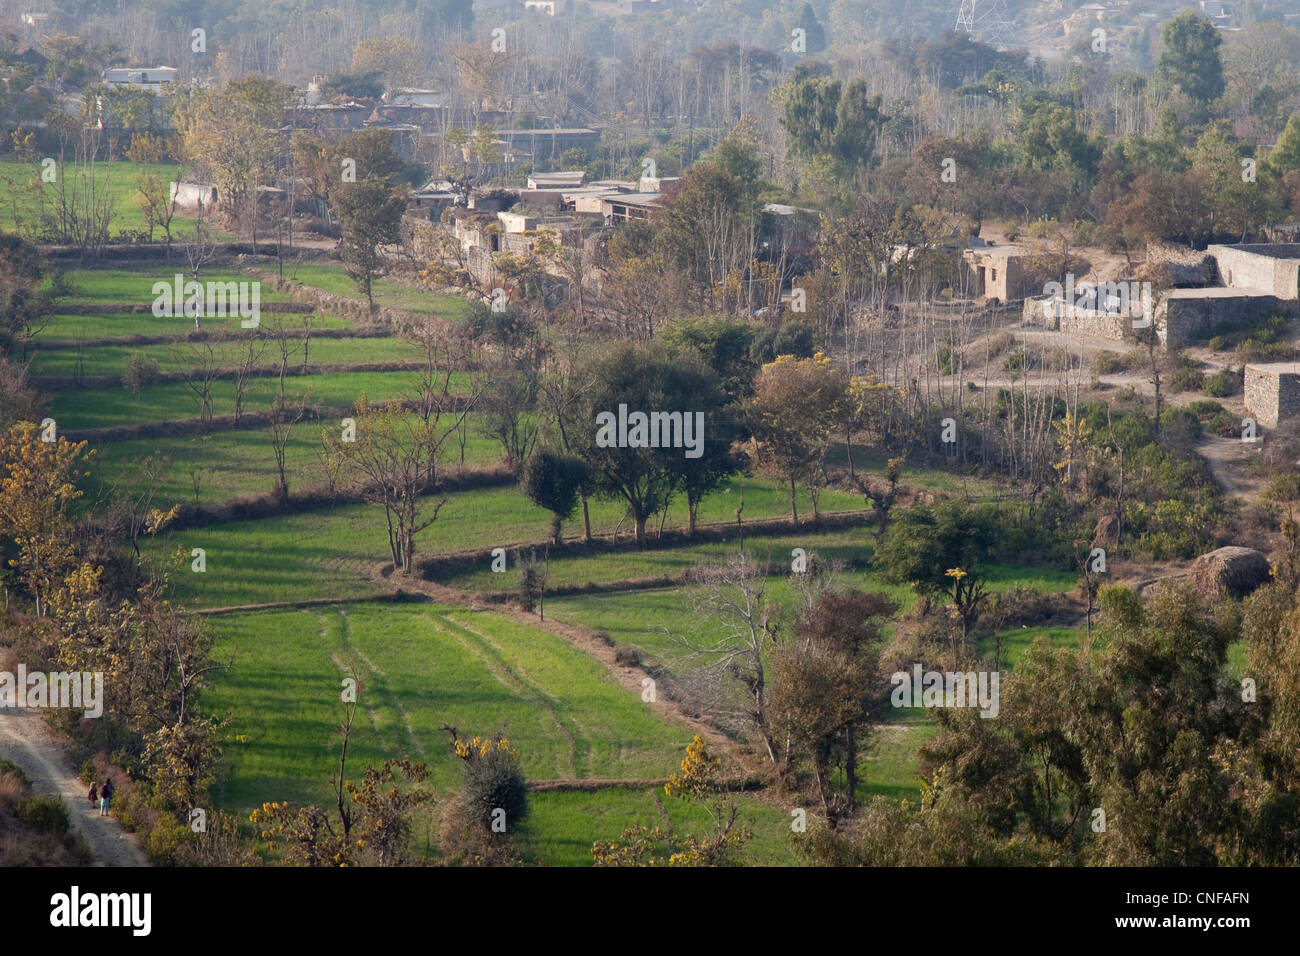 Village agricole de la Province de Punjab, Pakistan Banque D'Images